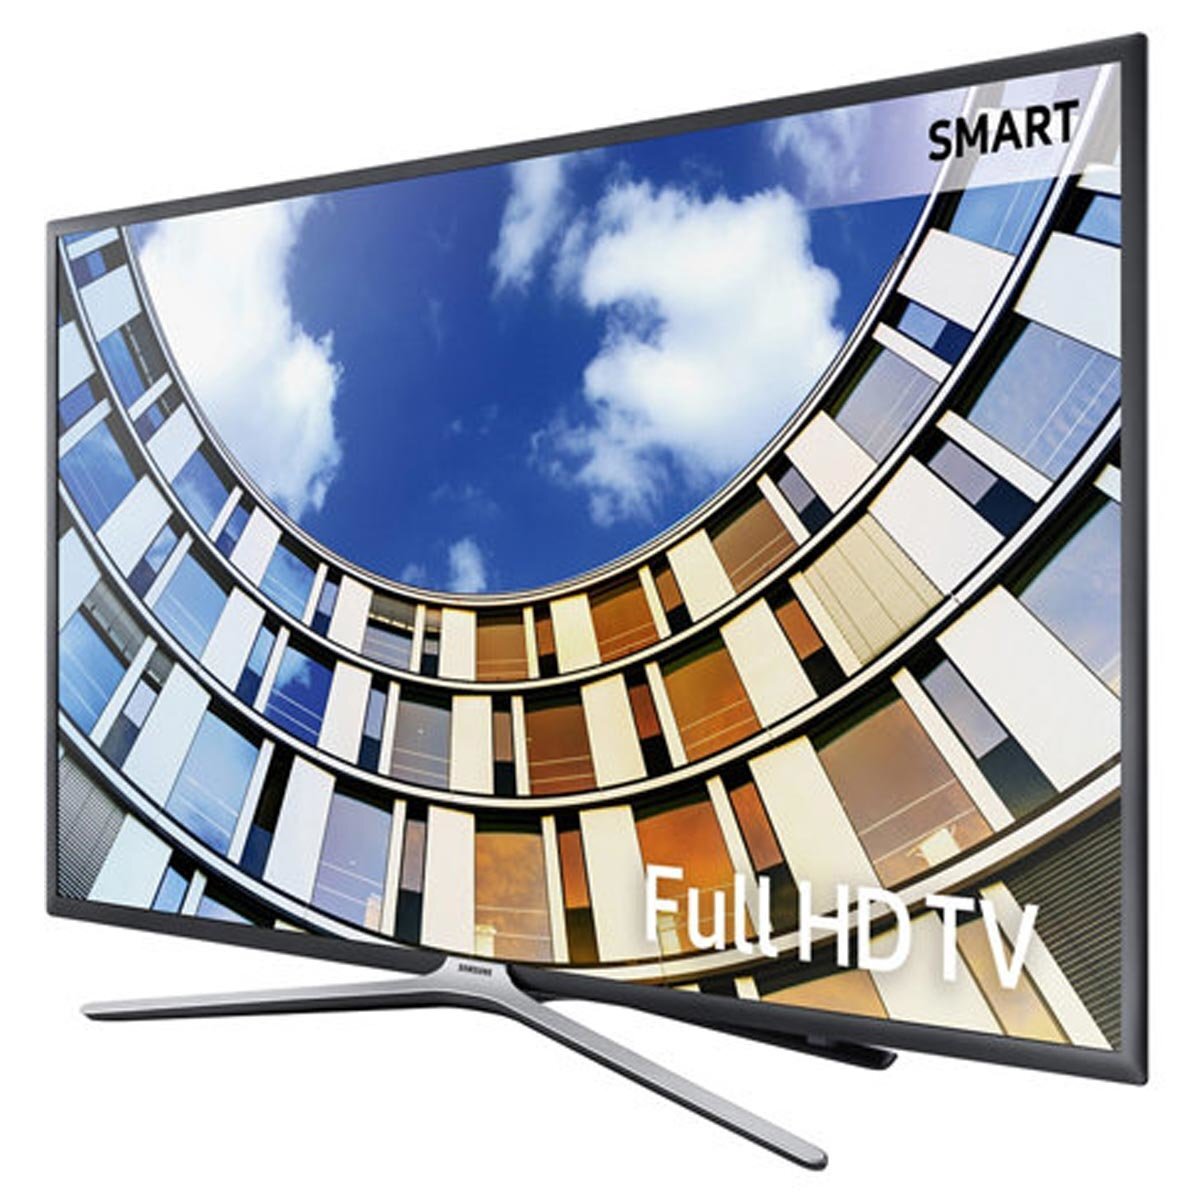 Tivi 32 inch giá rẻ Samsung UA32M5500 Full HD cho hình ảnh siêu sắc nét và chân thực